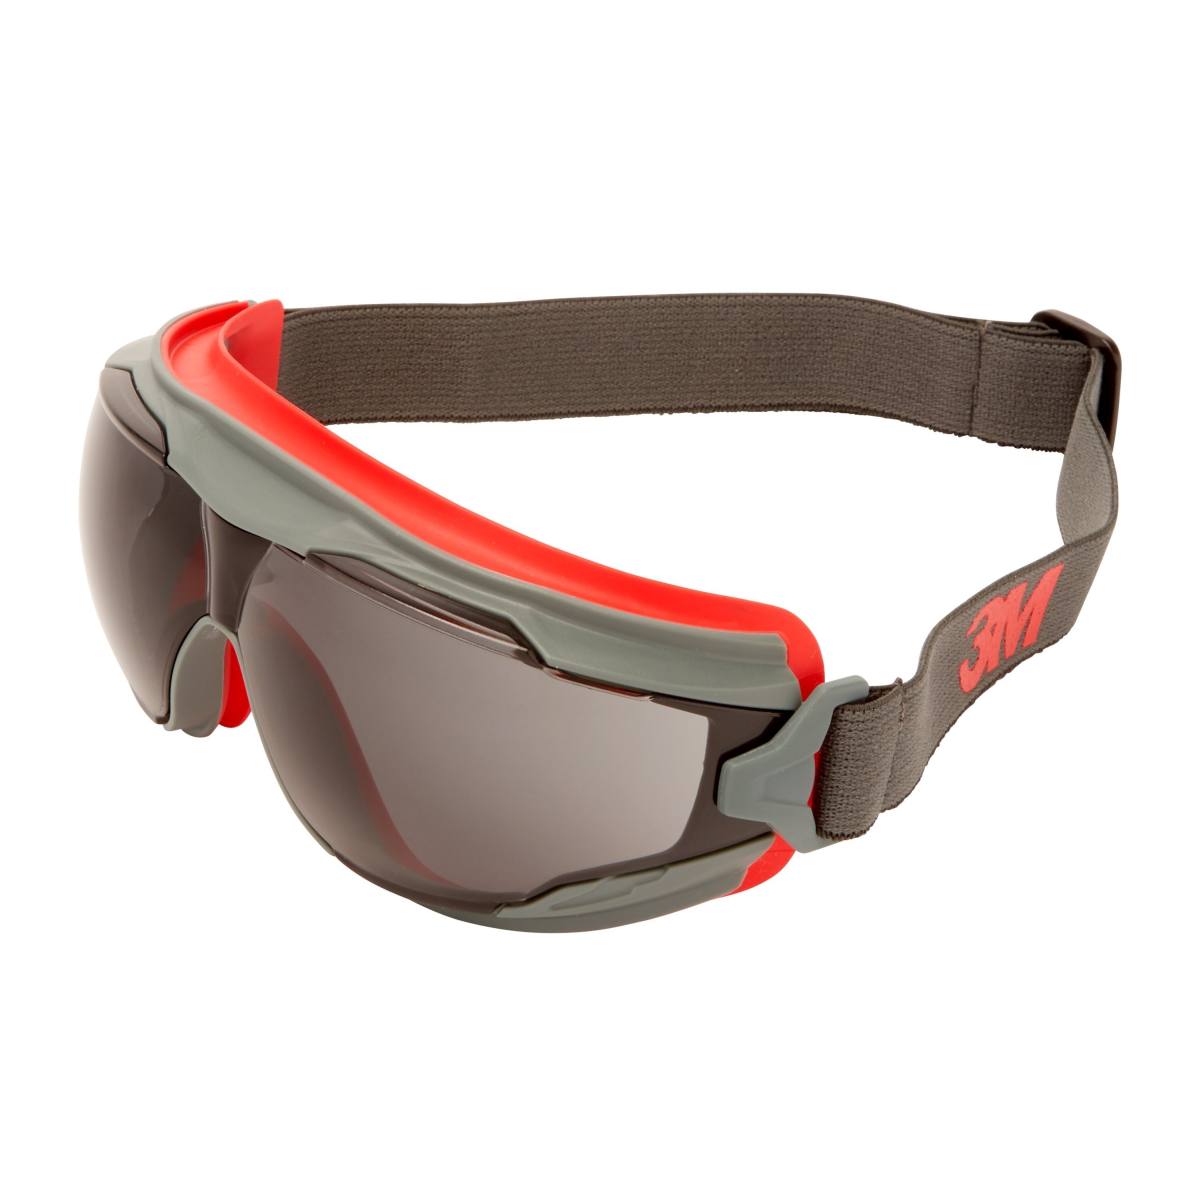 3M GoggleGear 500 Vollsichtbrille GG502SGAF-EU, rot-grauer Rahmen, grau Scheiben, schwarzes Neopren-Kopfband